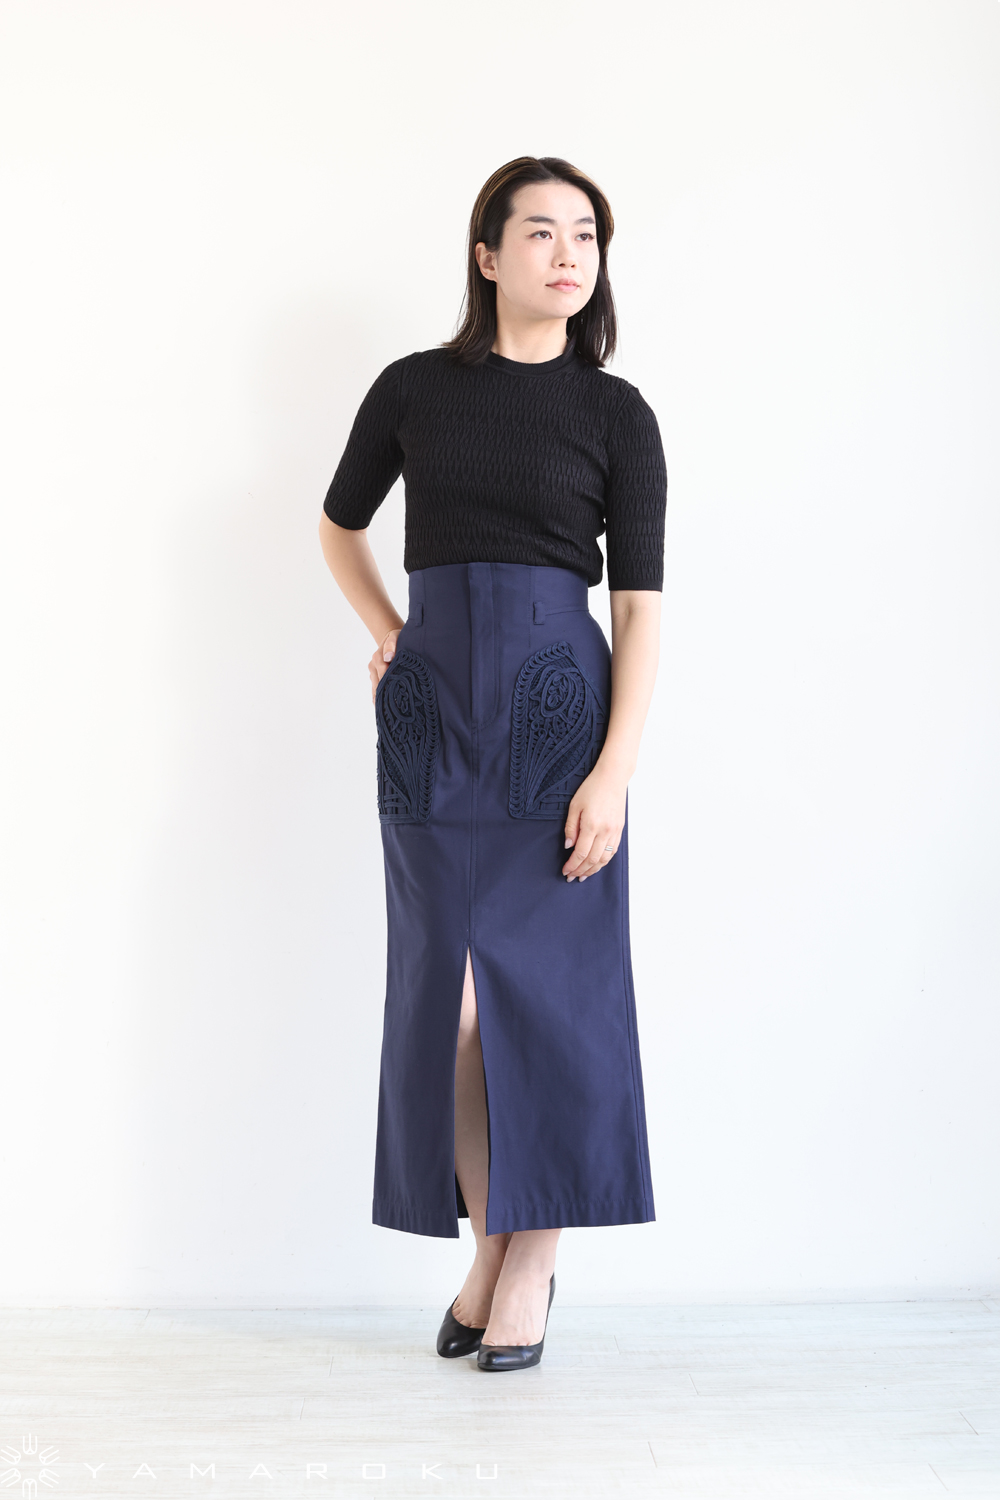 Mame Kurogouchi(マメ) Cording Embroidered Nep-Cotton Skirt